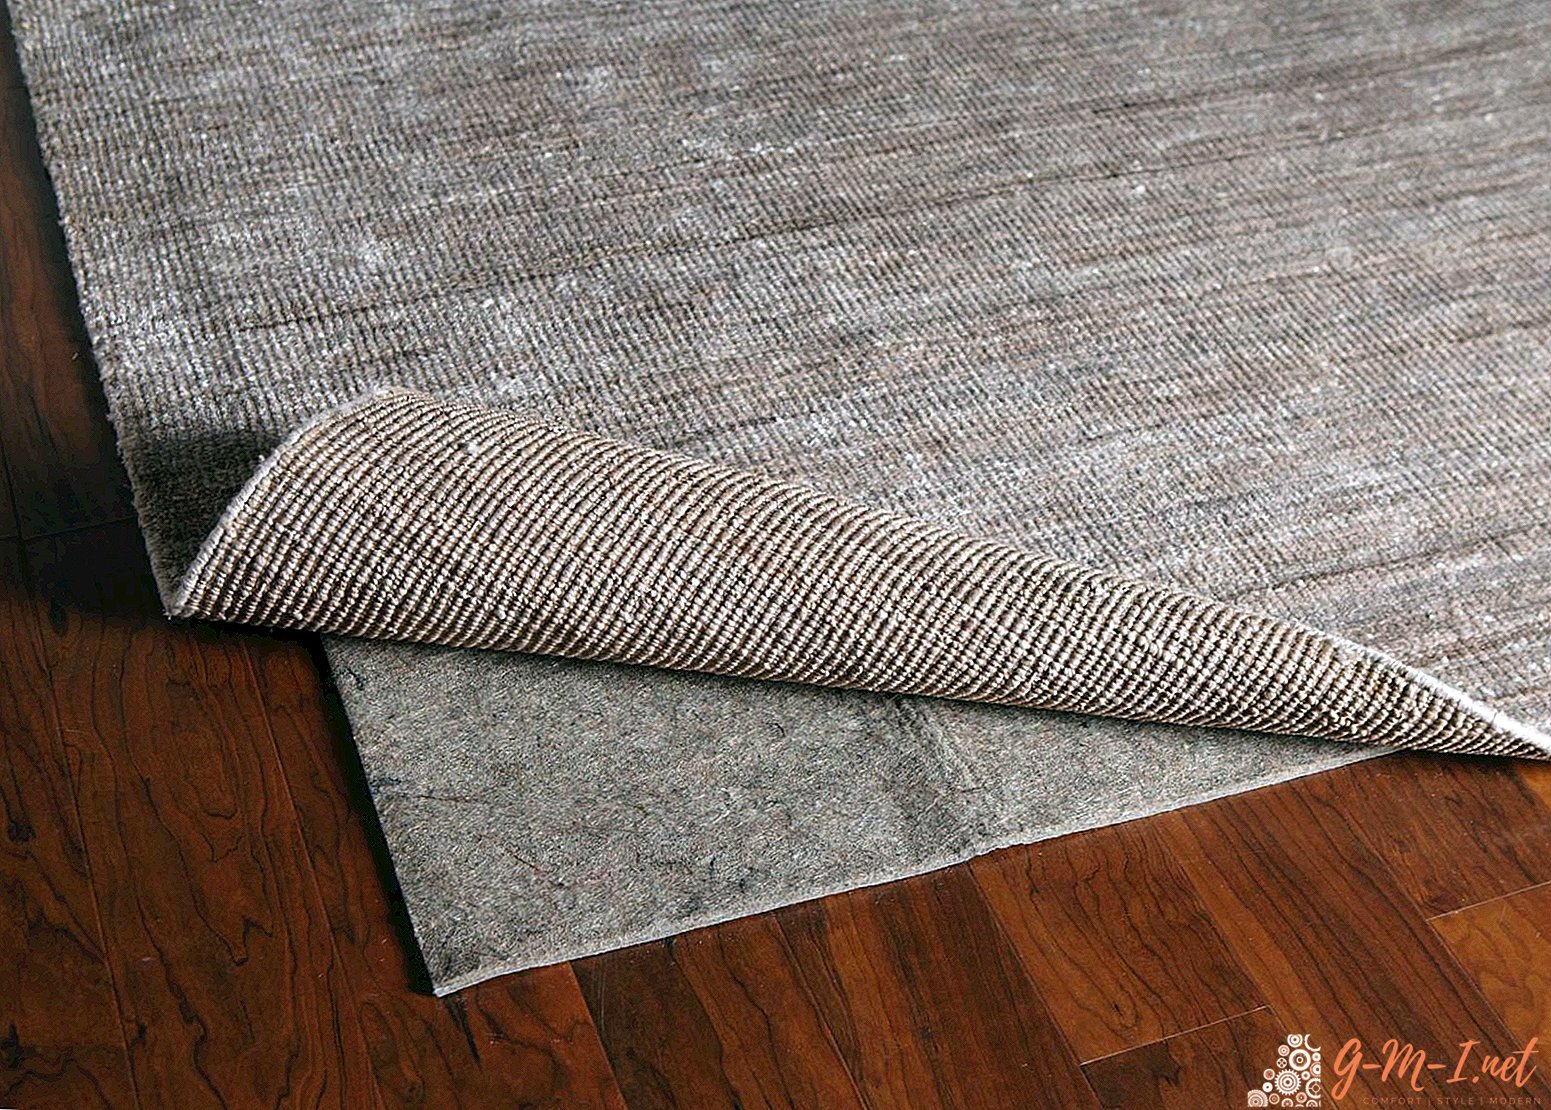 Comment poser un tapis sur un plancher en bois